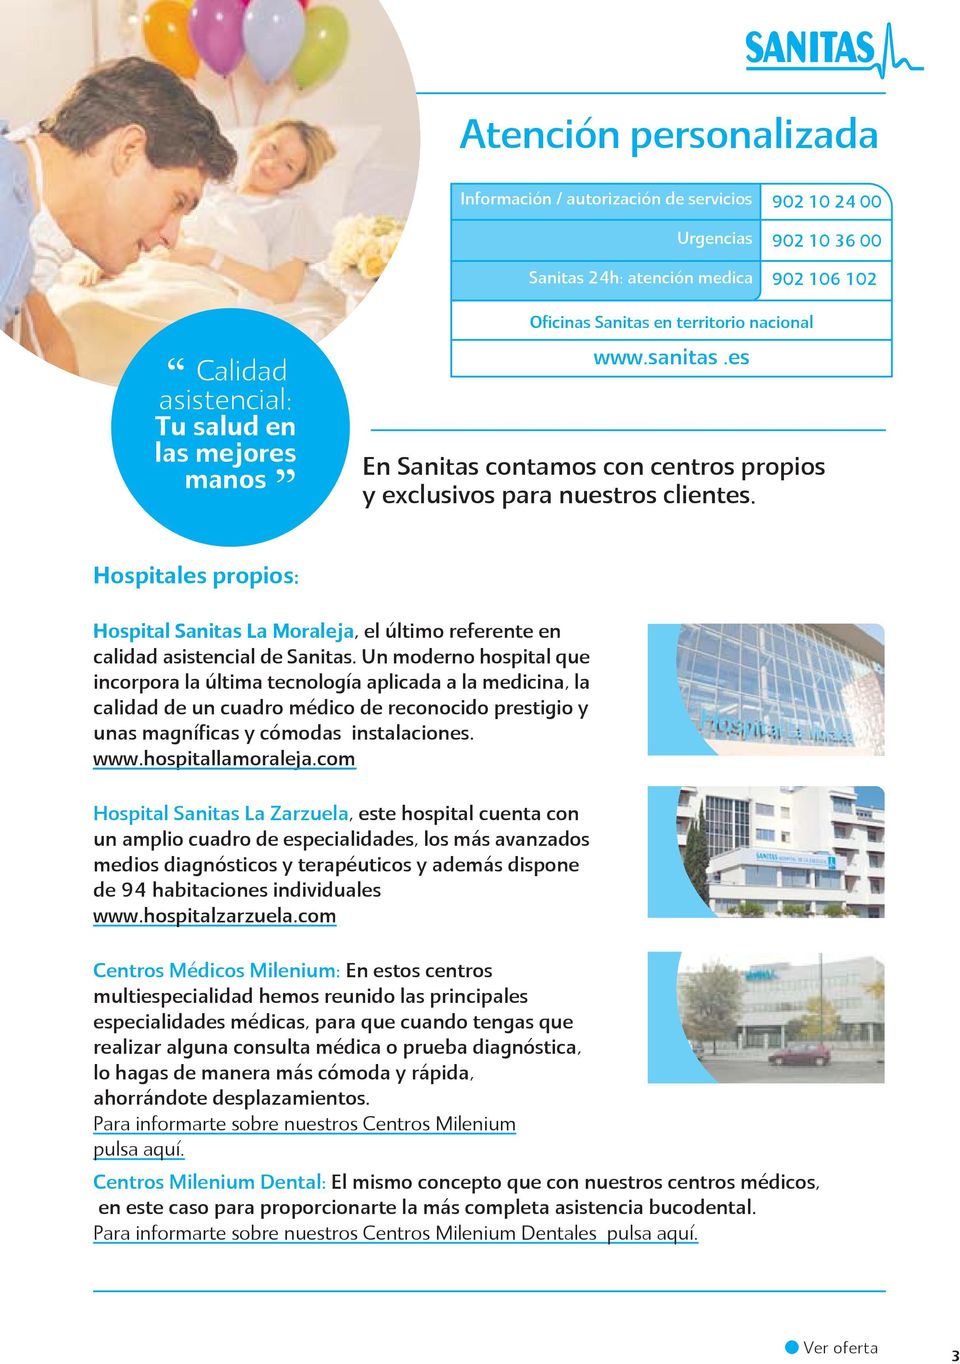 Hospitales propios: Hospital Sanitas La Moraleja, el último referente en calidad asistencial de Sanitas.